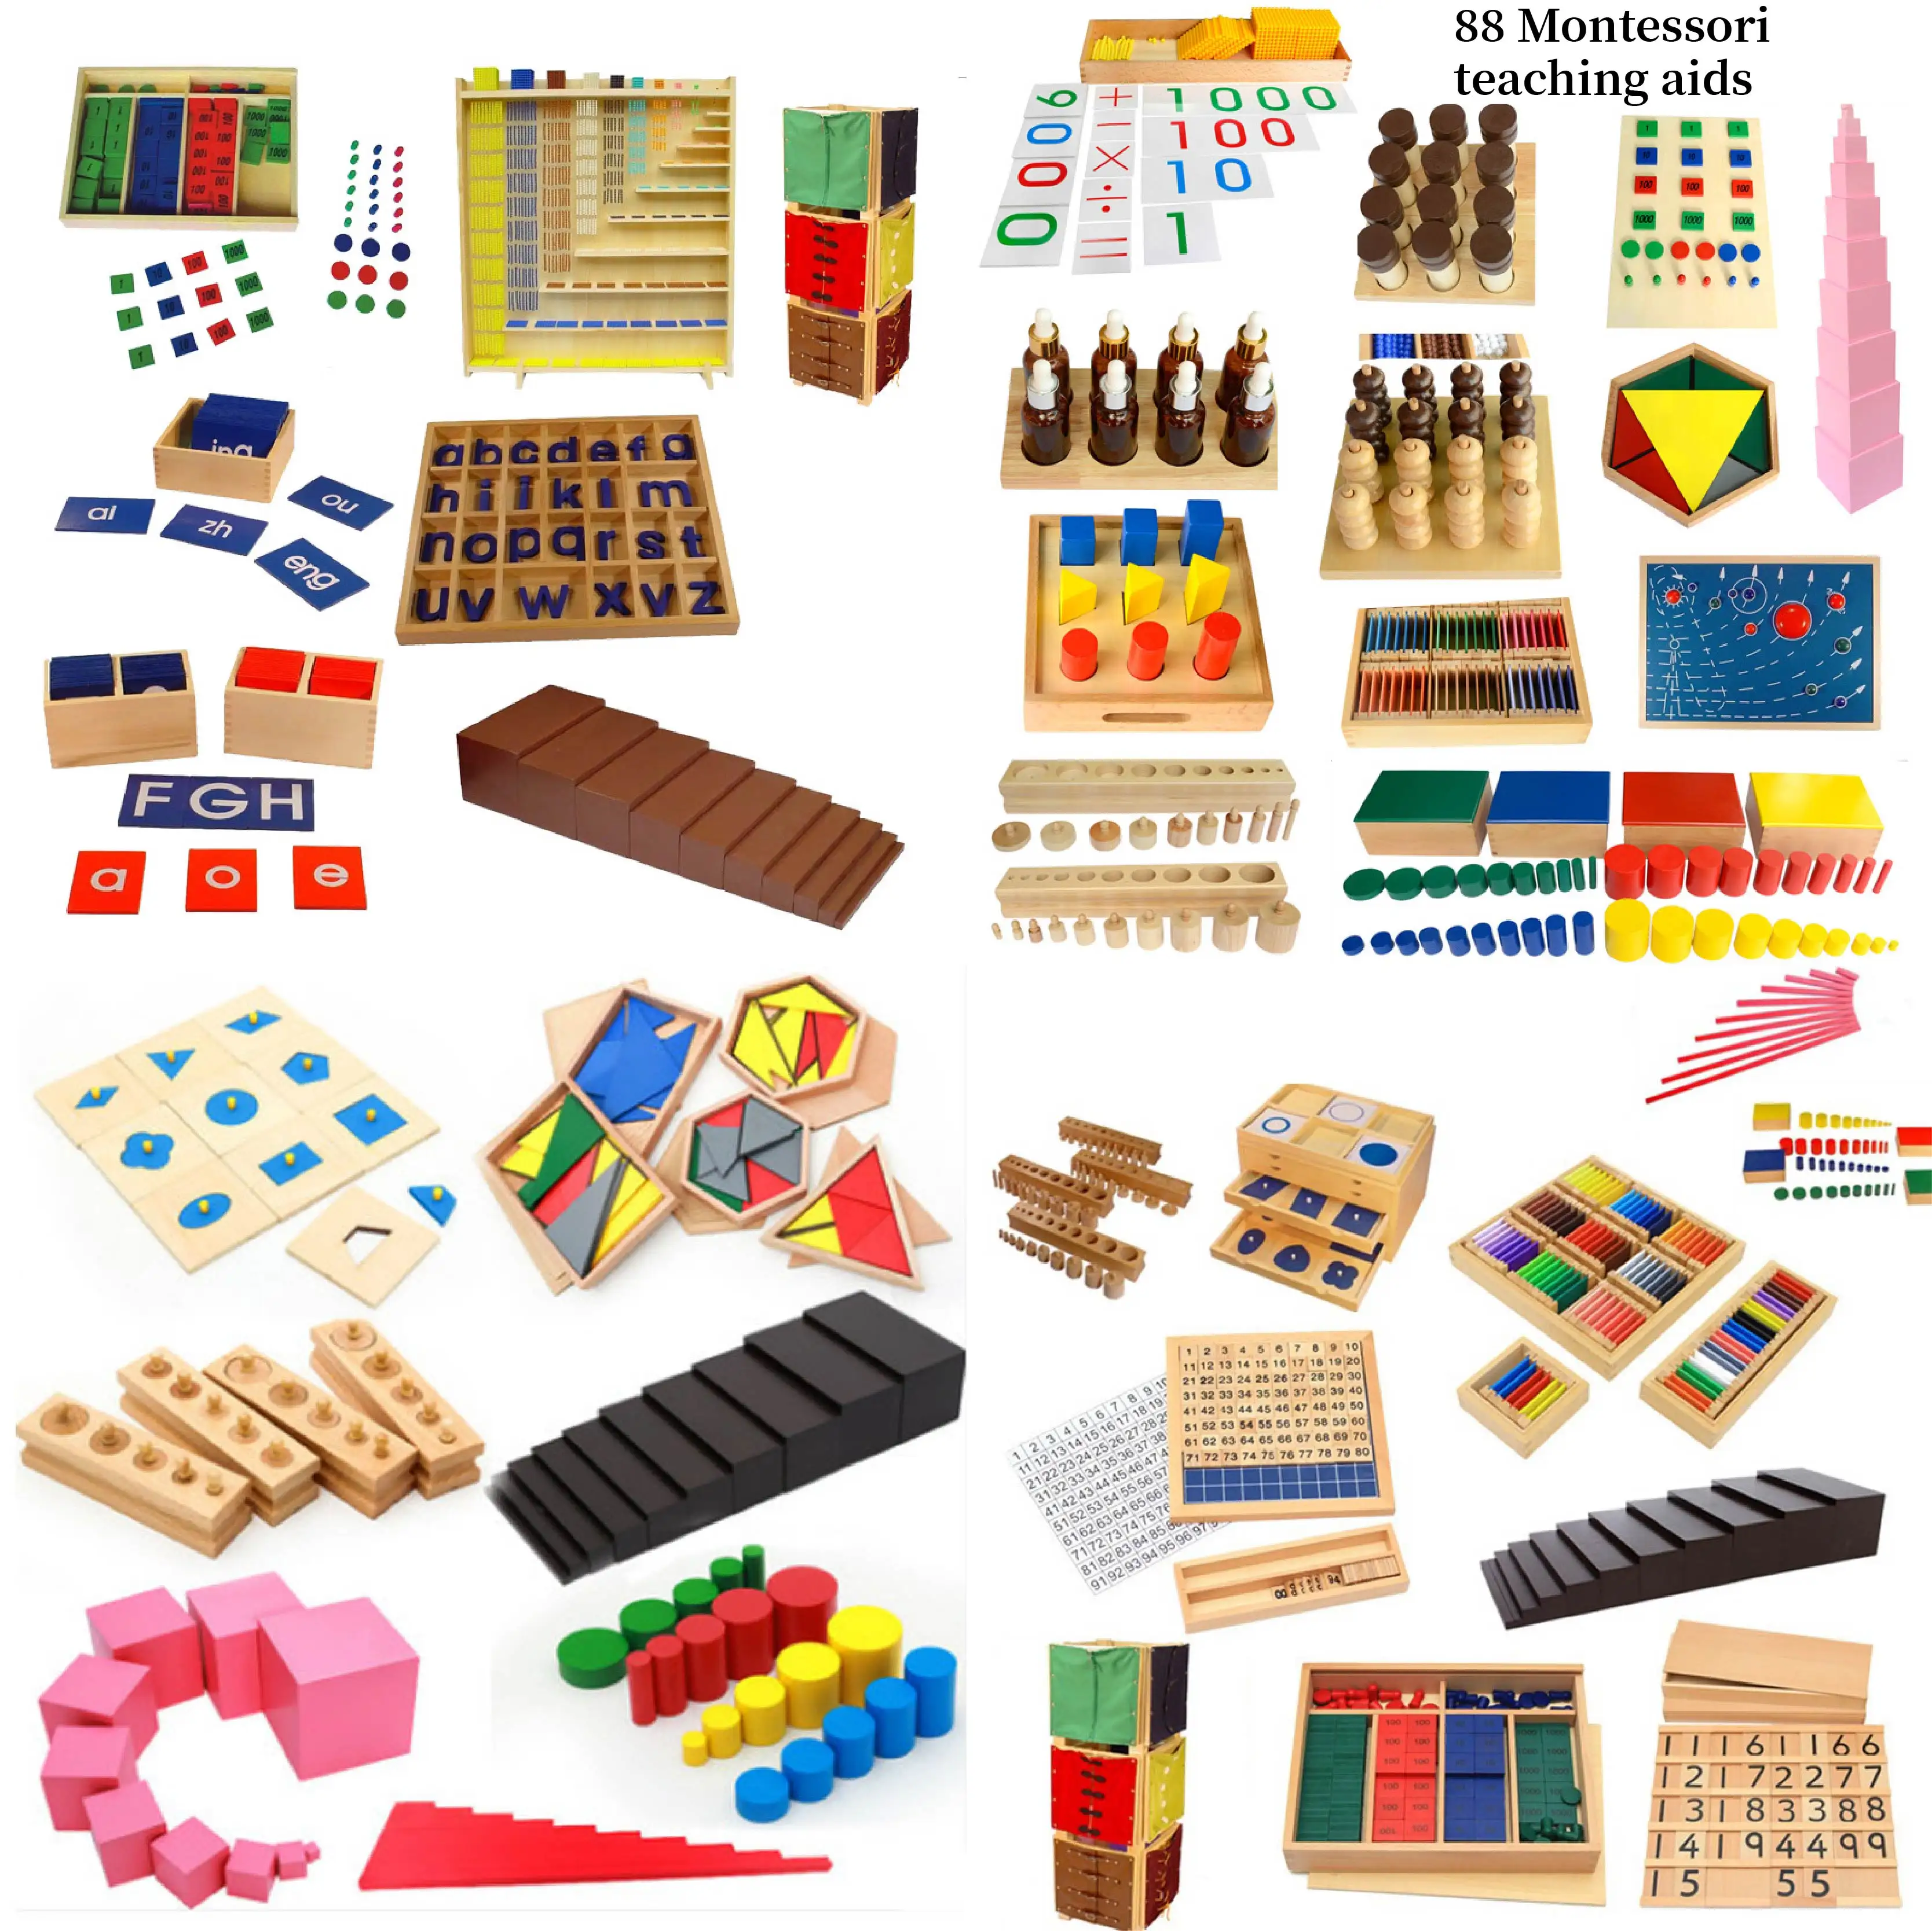 Apprendre à bébé Montessori meubles manuels en bois de qualité supérieure matériaux de la maternelle autres jouets sensoriels éducatifs jeux pour enfants